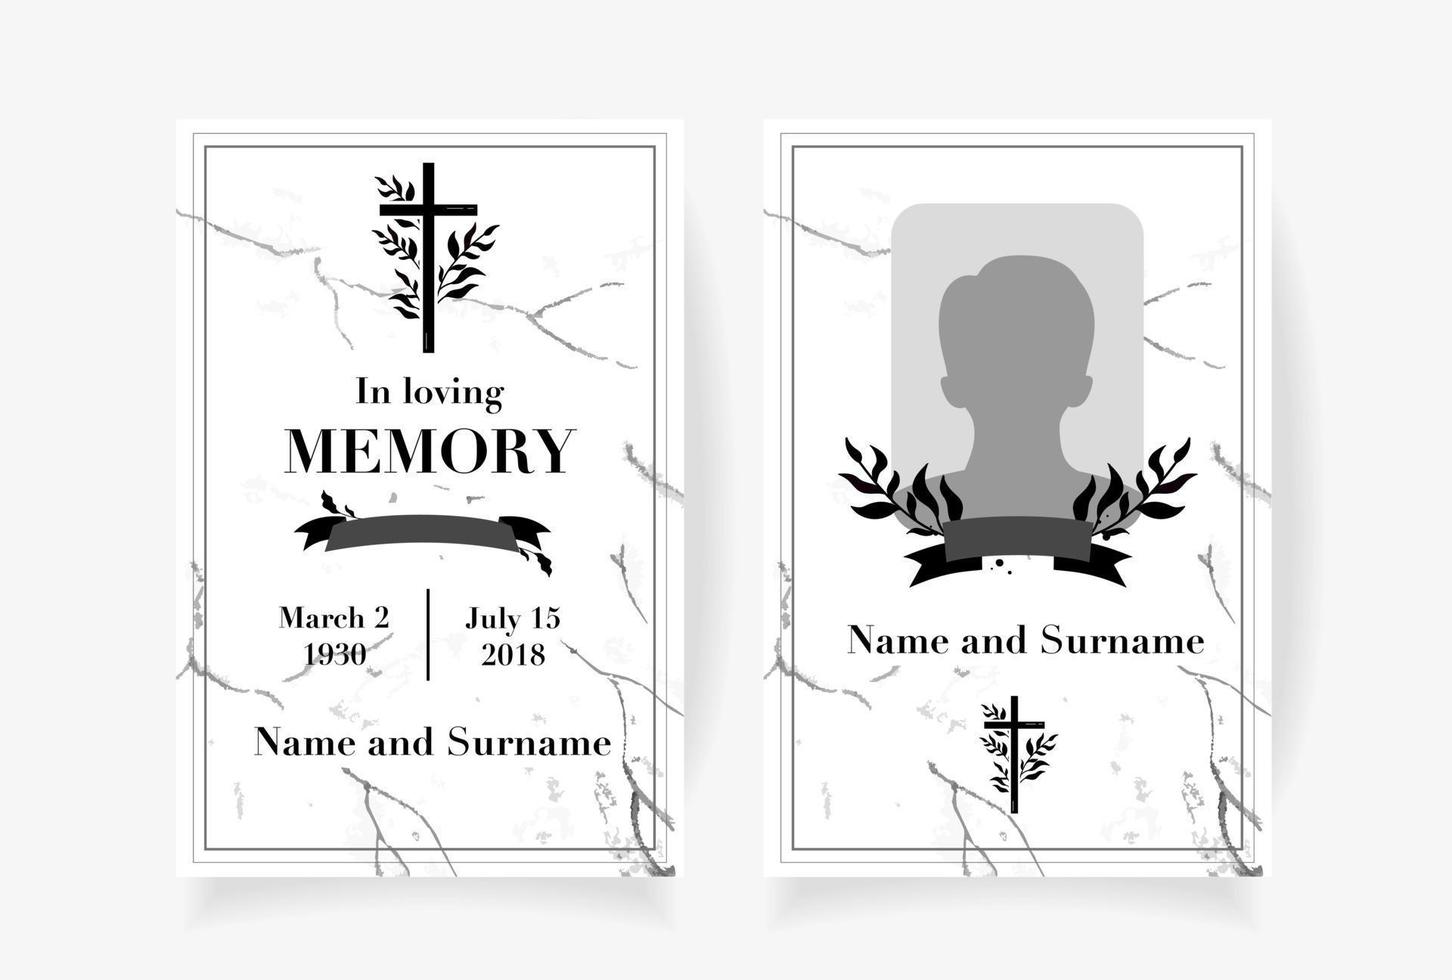 disegno del modello di carta funebre con rami posti sotto il nome della croce foto e le date della morte. illustrazione vettoriale in bianco e nero